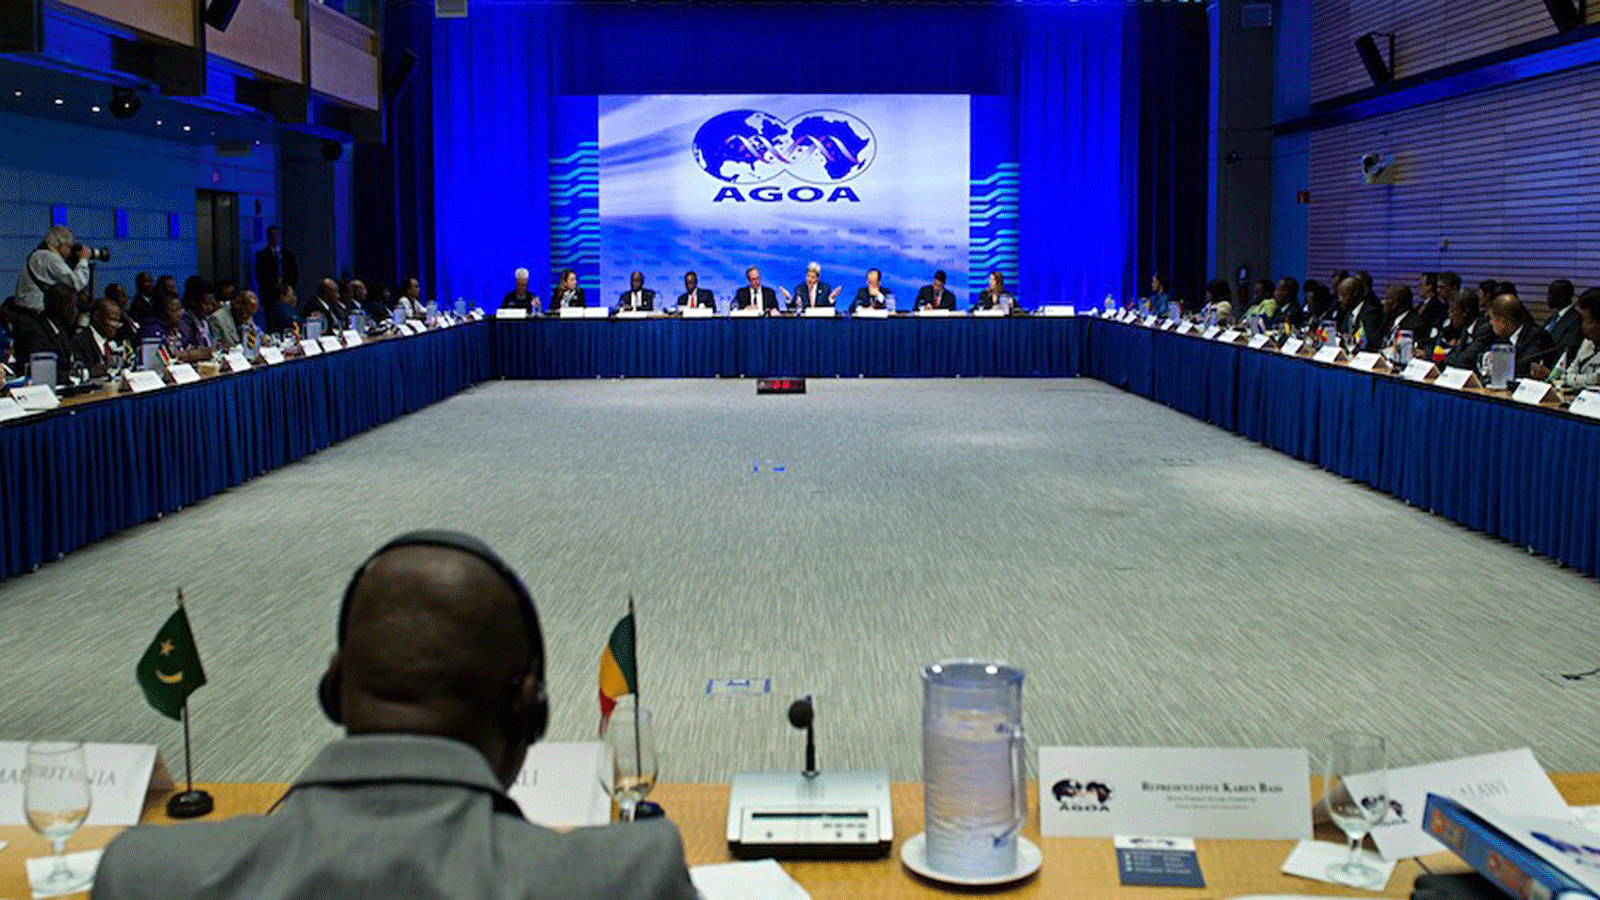 وزير الخارجية الأميركي جون كيري(آنذاك) يتحدث حول قانون النمو والفرص في أفريقيا (أغوا) في 4آب/ أغسطس 2014 خلال القمة الأميركية الأفريقية في البنك الدولي في واشنطن العاصمة.